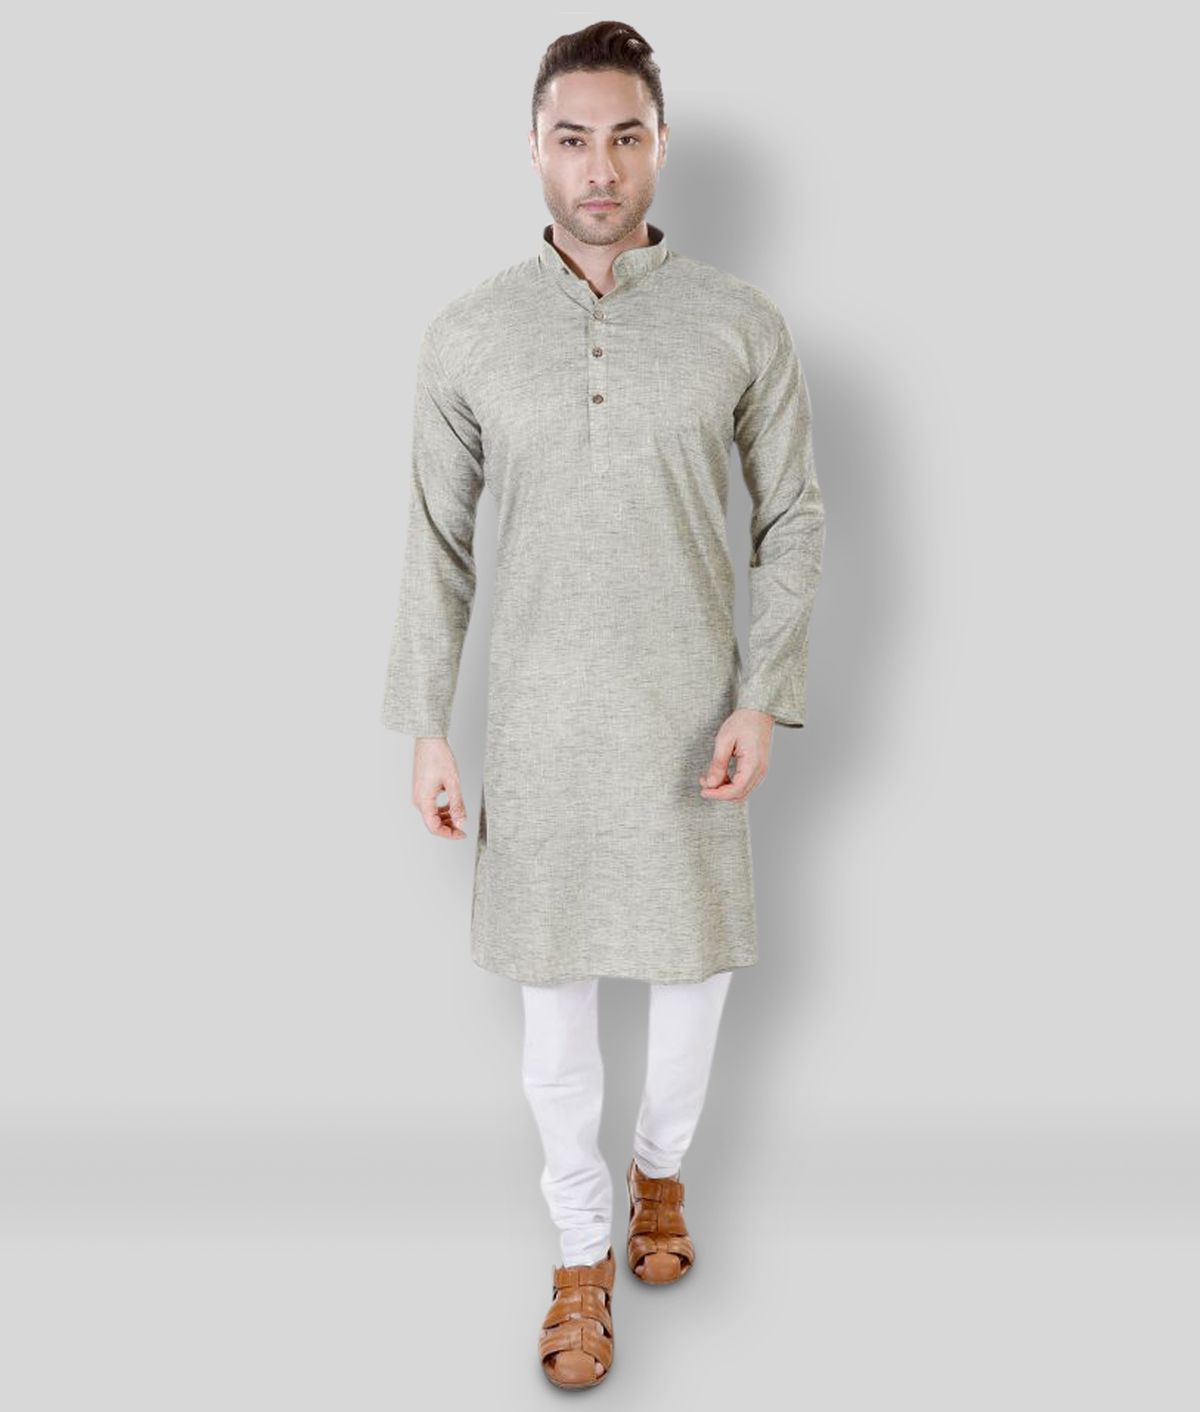     			Maharaja - Green Cotton Blend Regular Fit Men's Kurta Pyjama Set ( Pack of 1 )